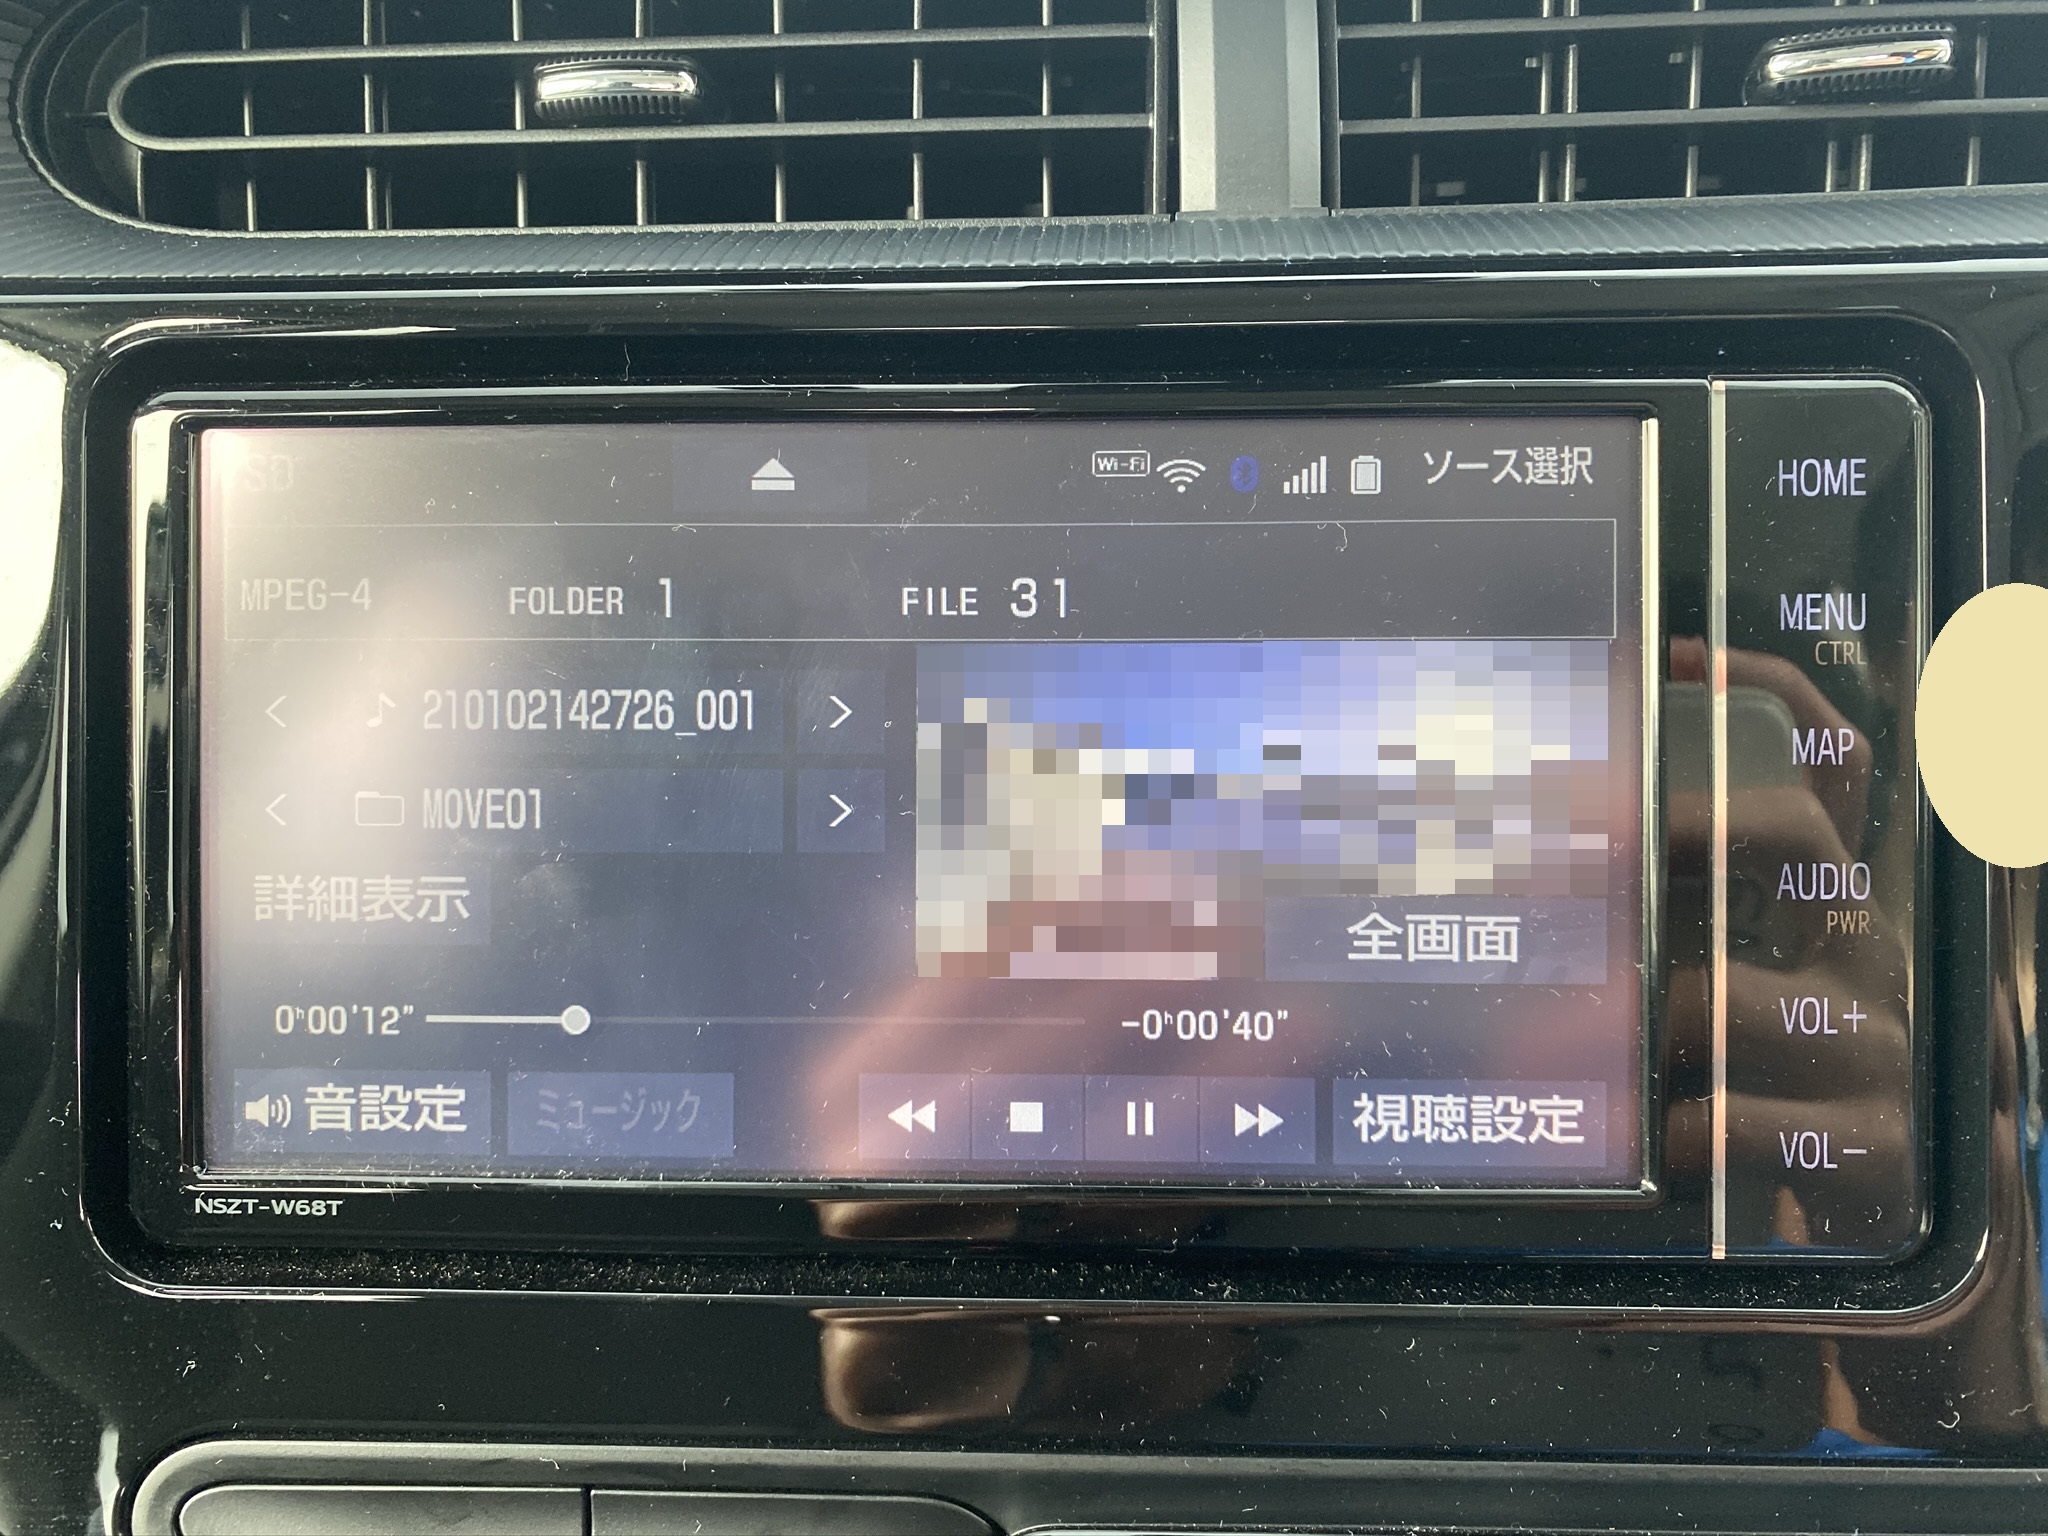 トヨタ純正ドラレコ Drt H68a の映像をt Connectナビで確認 時刻設定の仕方 ぱそとび ぼっち地方公務員の日常